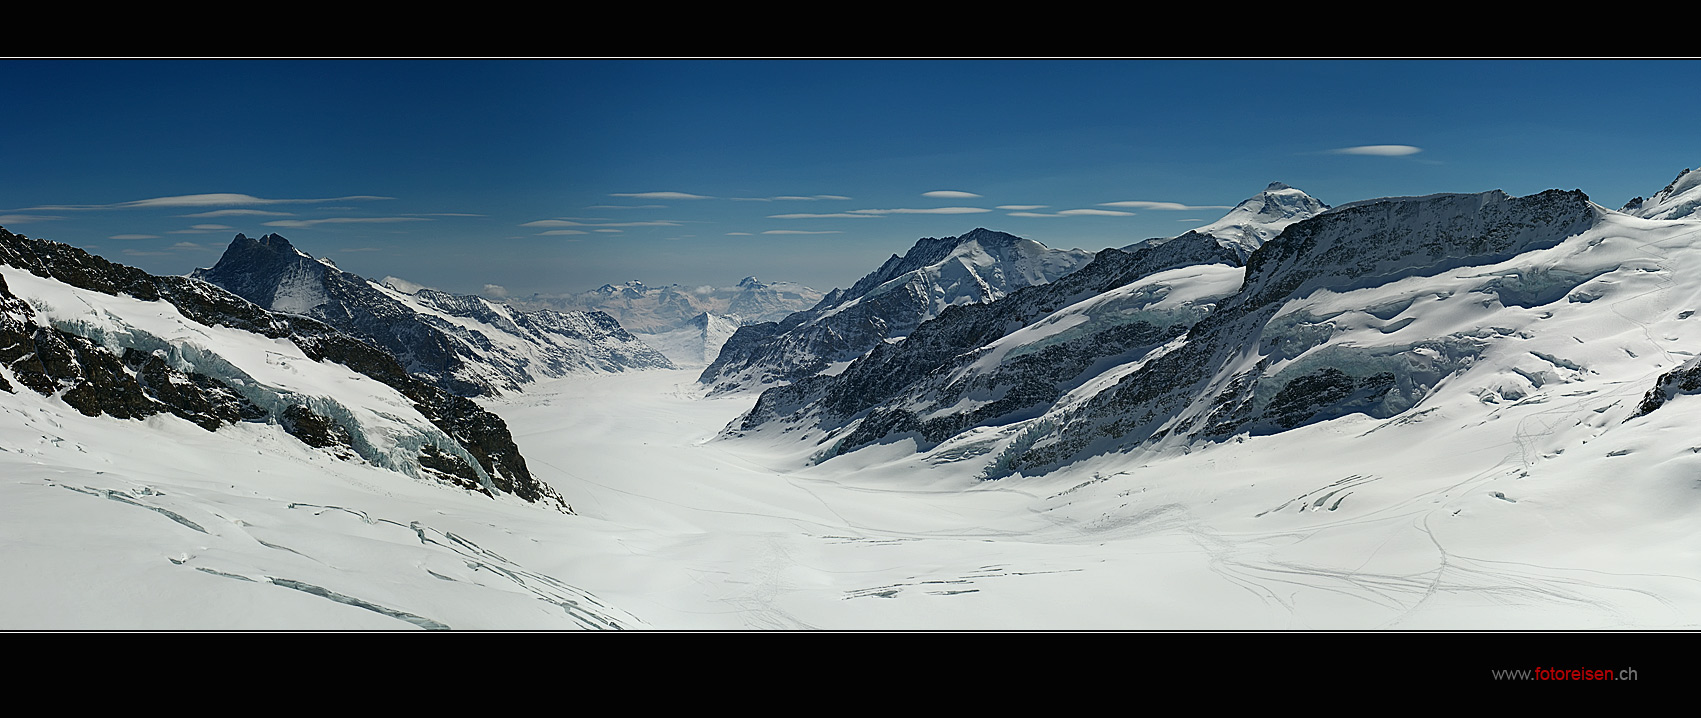 Grosser Aletschgletscher vom Jungfraujoch